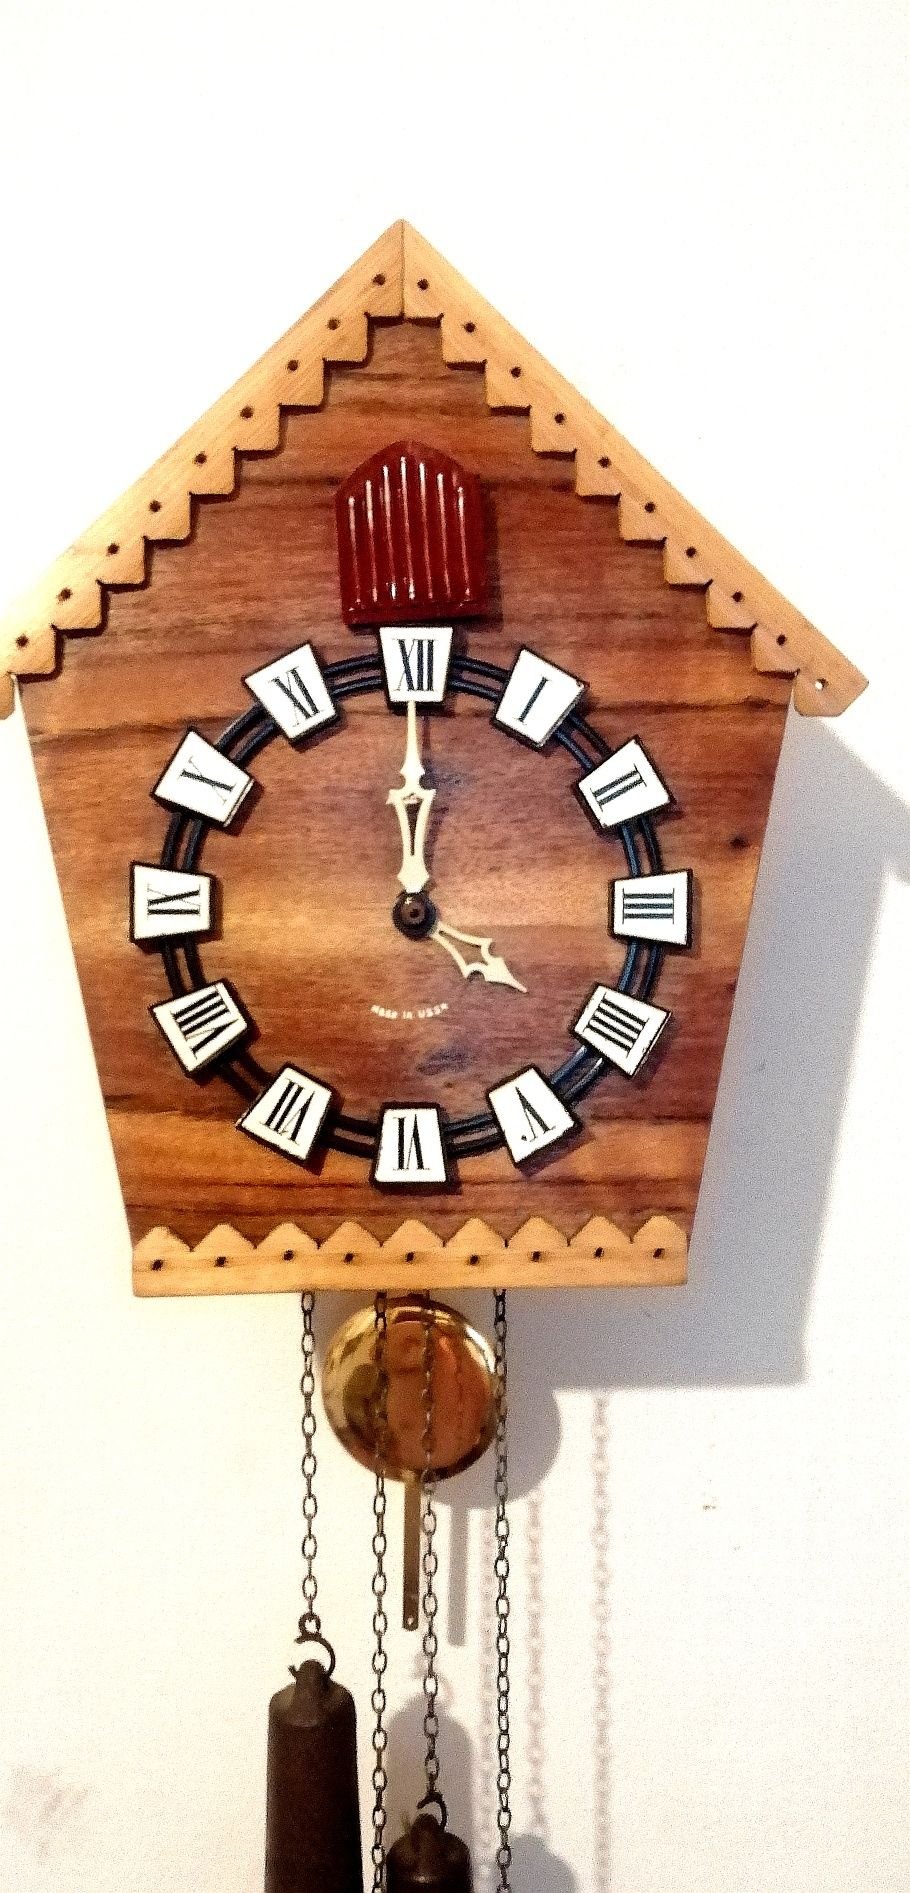 Zegar z kukułka i gongiem